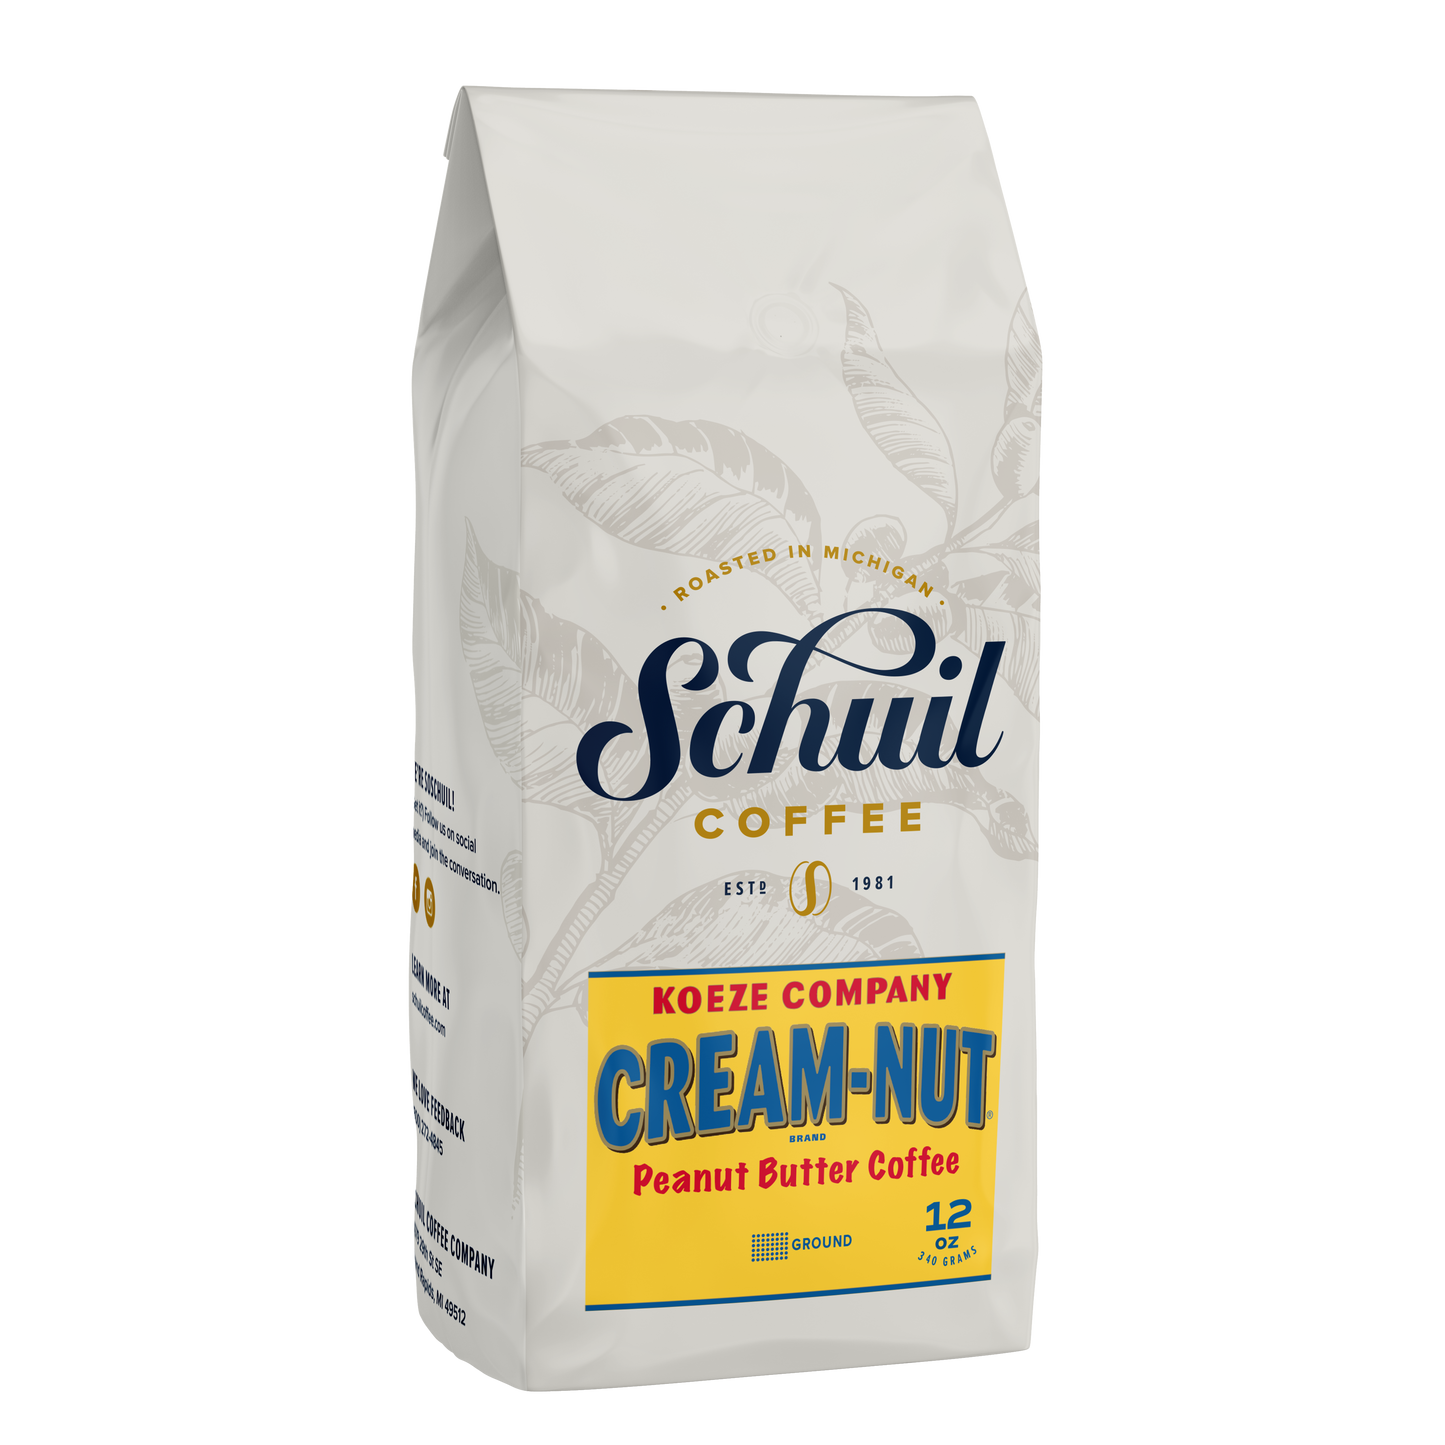 Koeze Cream Nut Peanut Butter Coffee